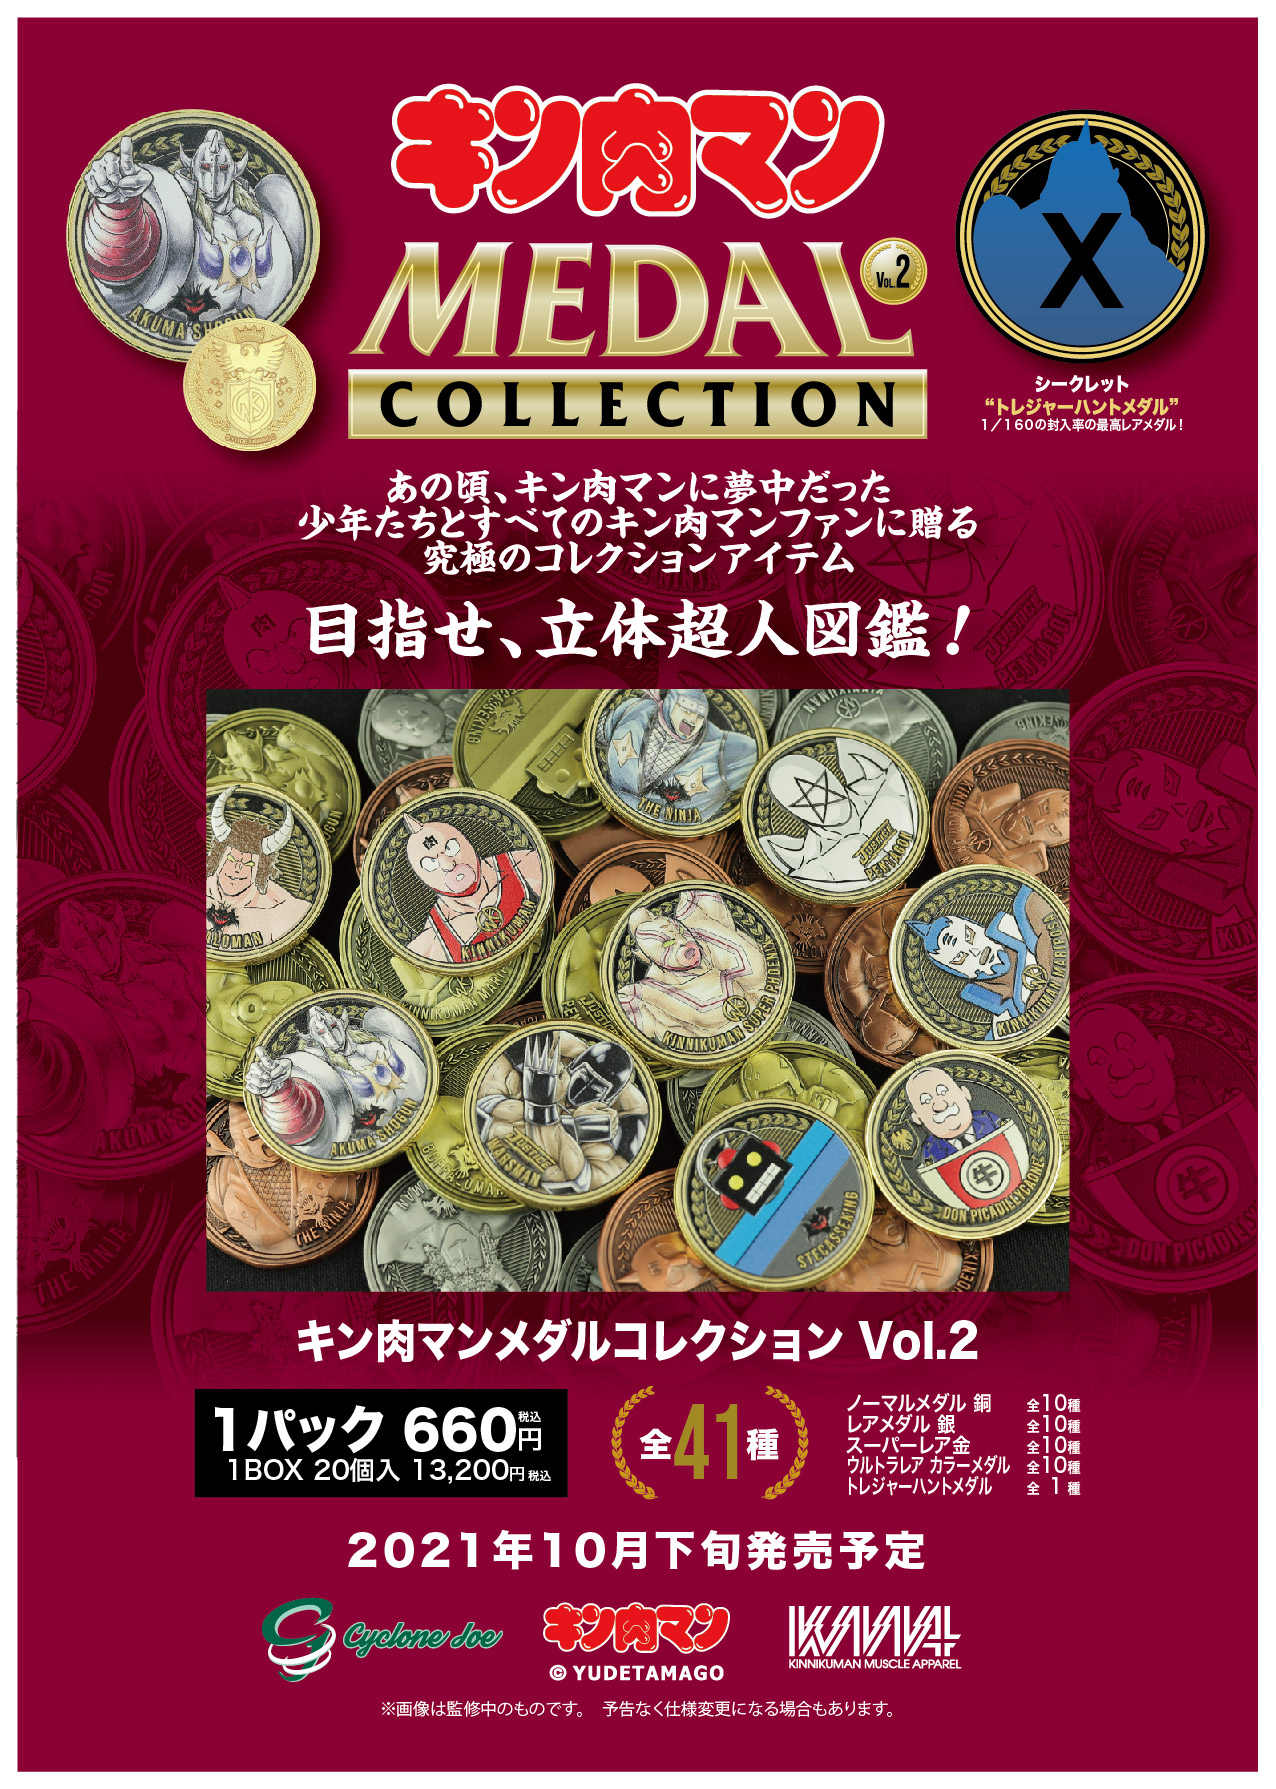 キン肉マンメダルコレクション VOL.2 BOX 20個入 【初回購入特典 KIN